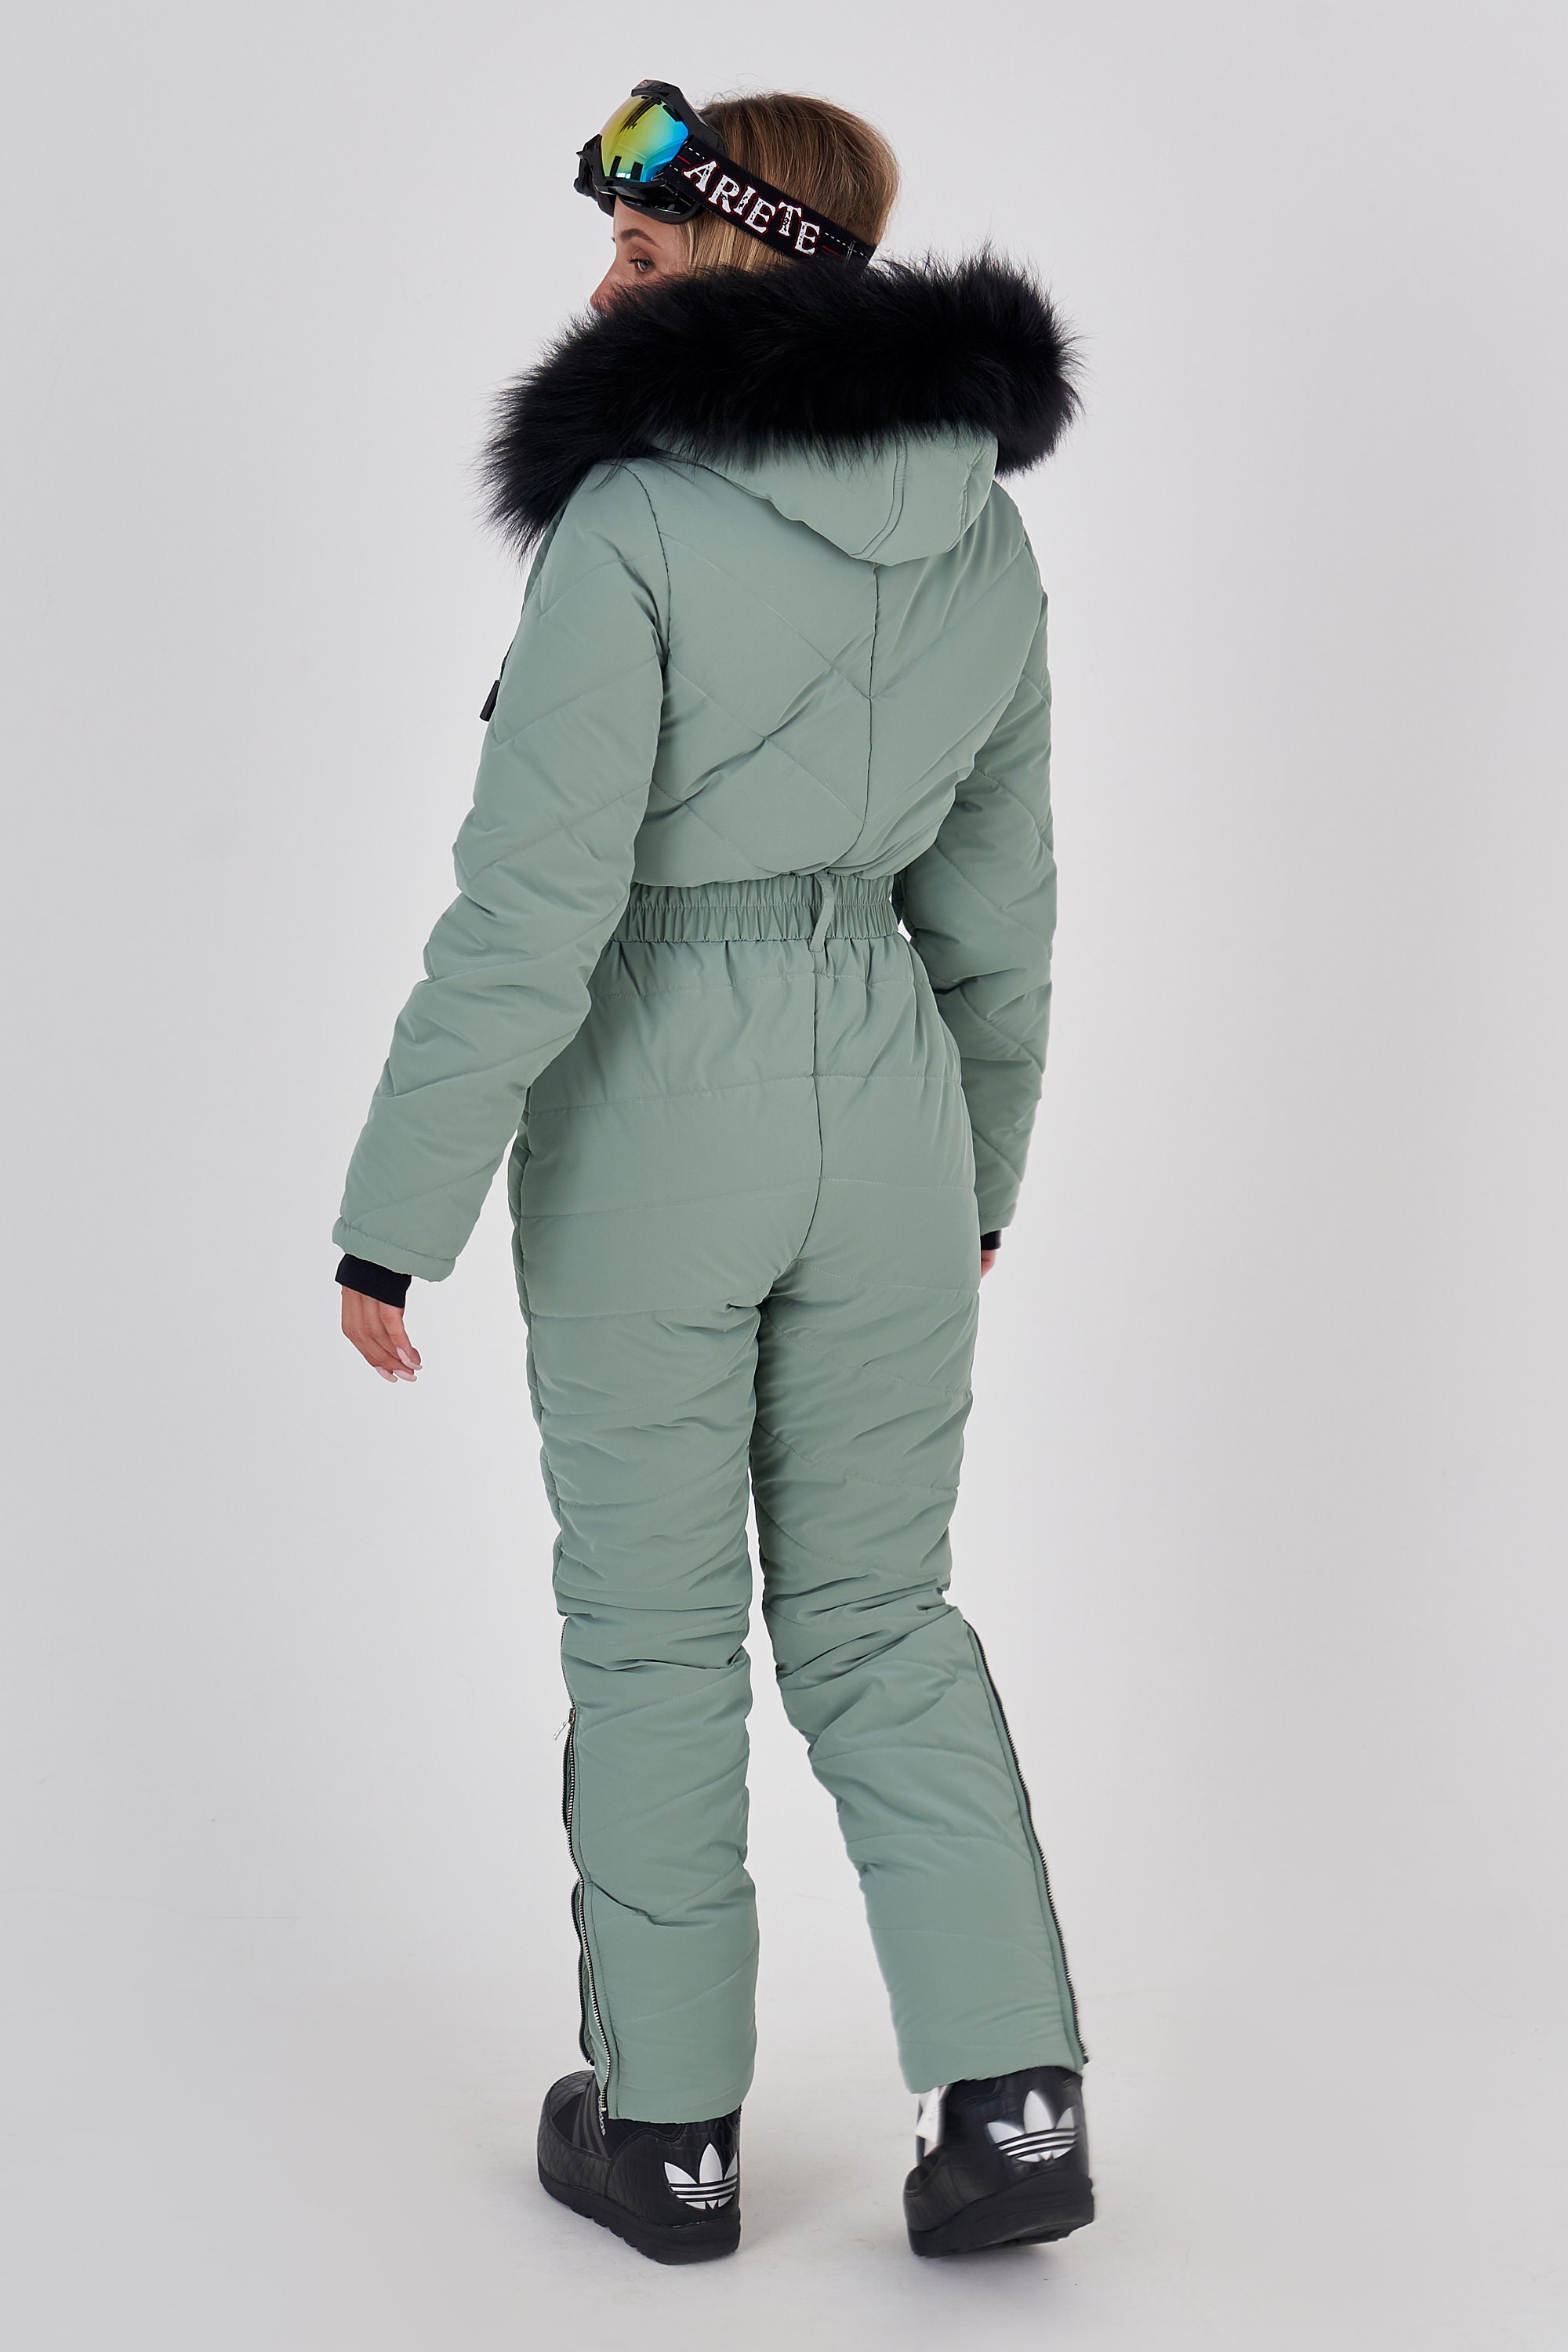 Olive ski suit Women one piece winter snowsuit Women warm suit | Etsy